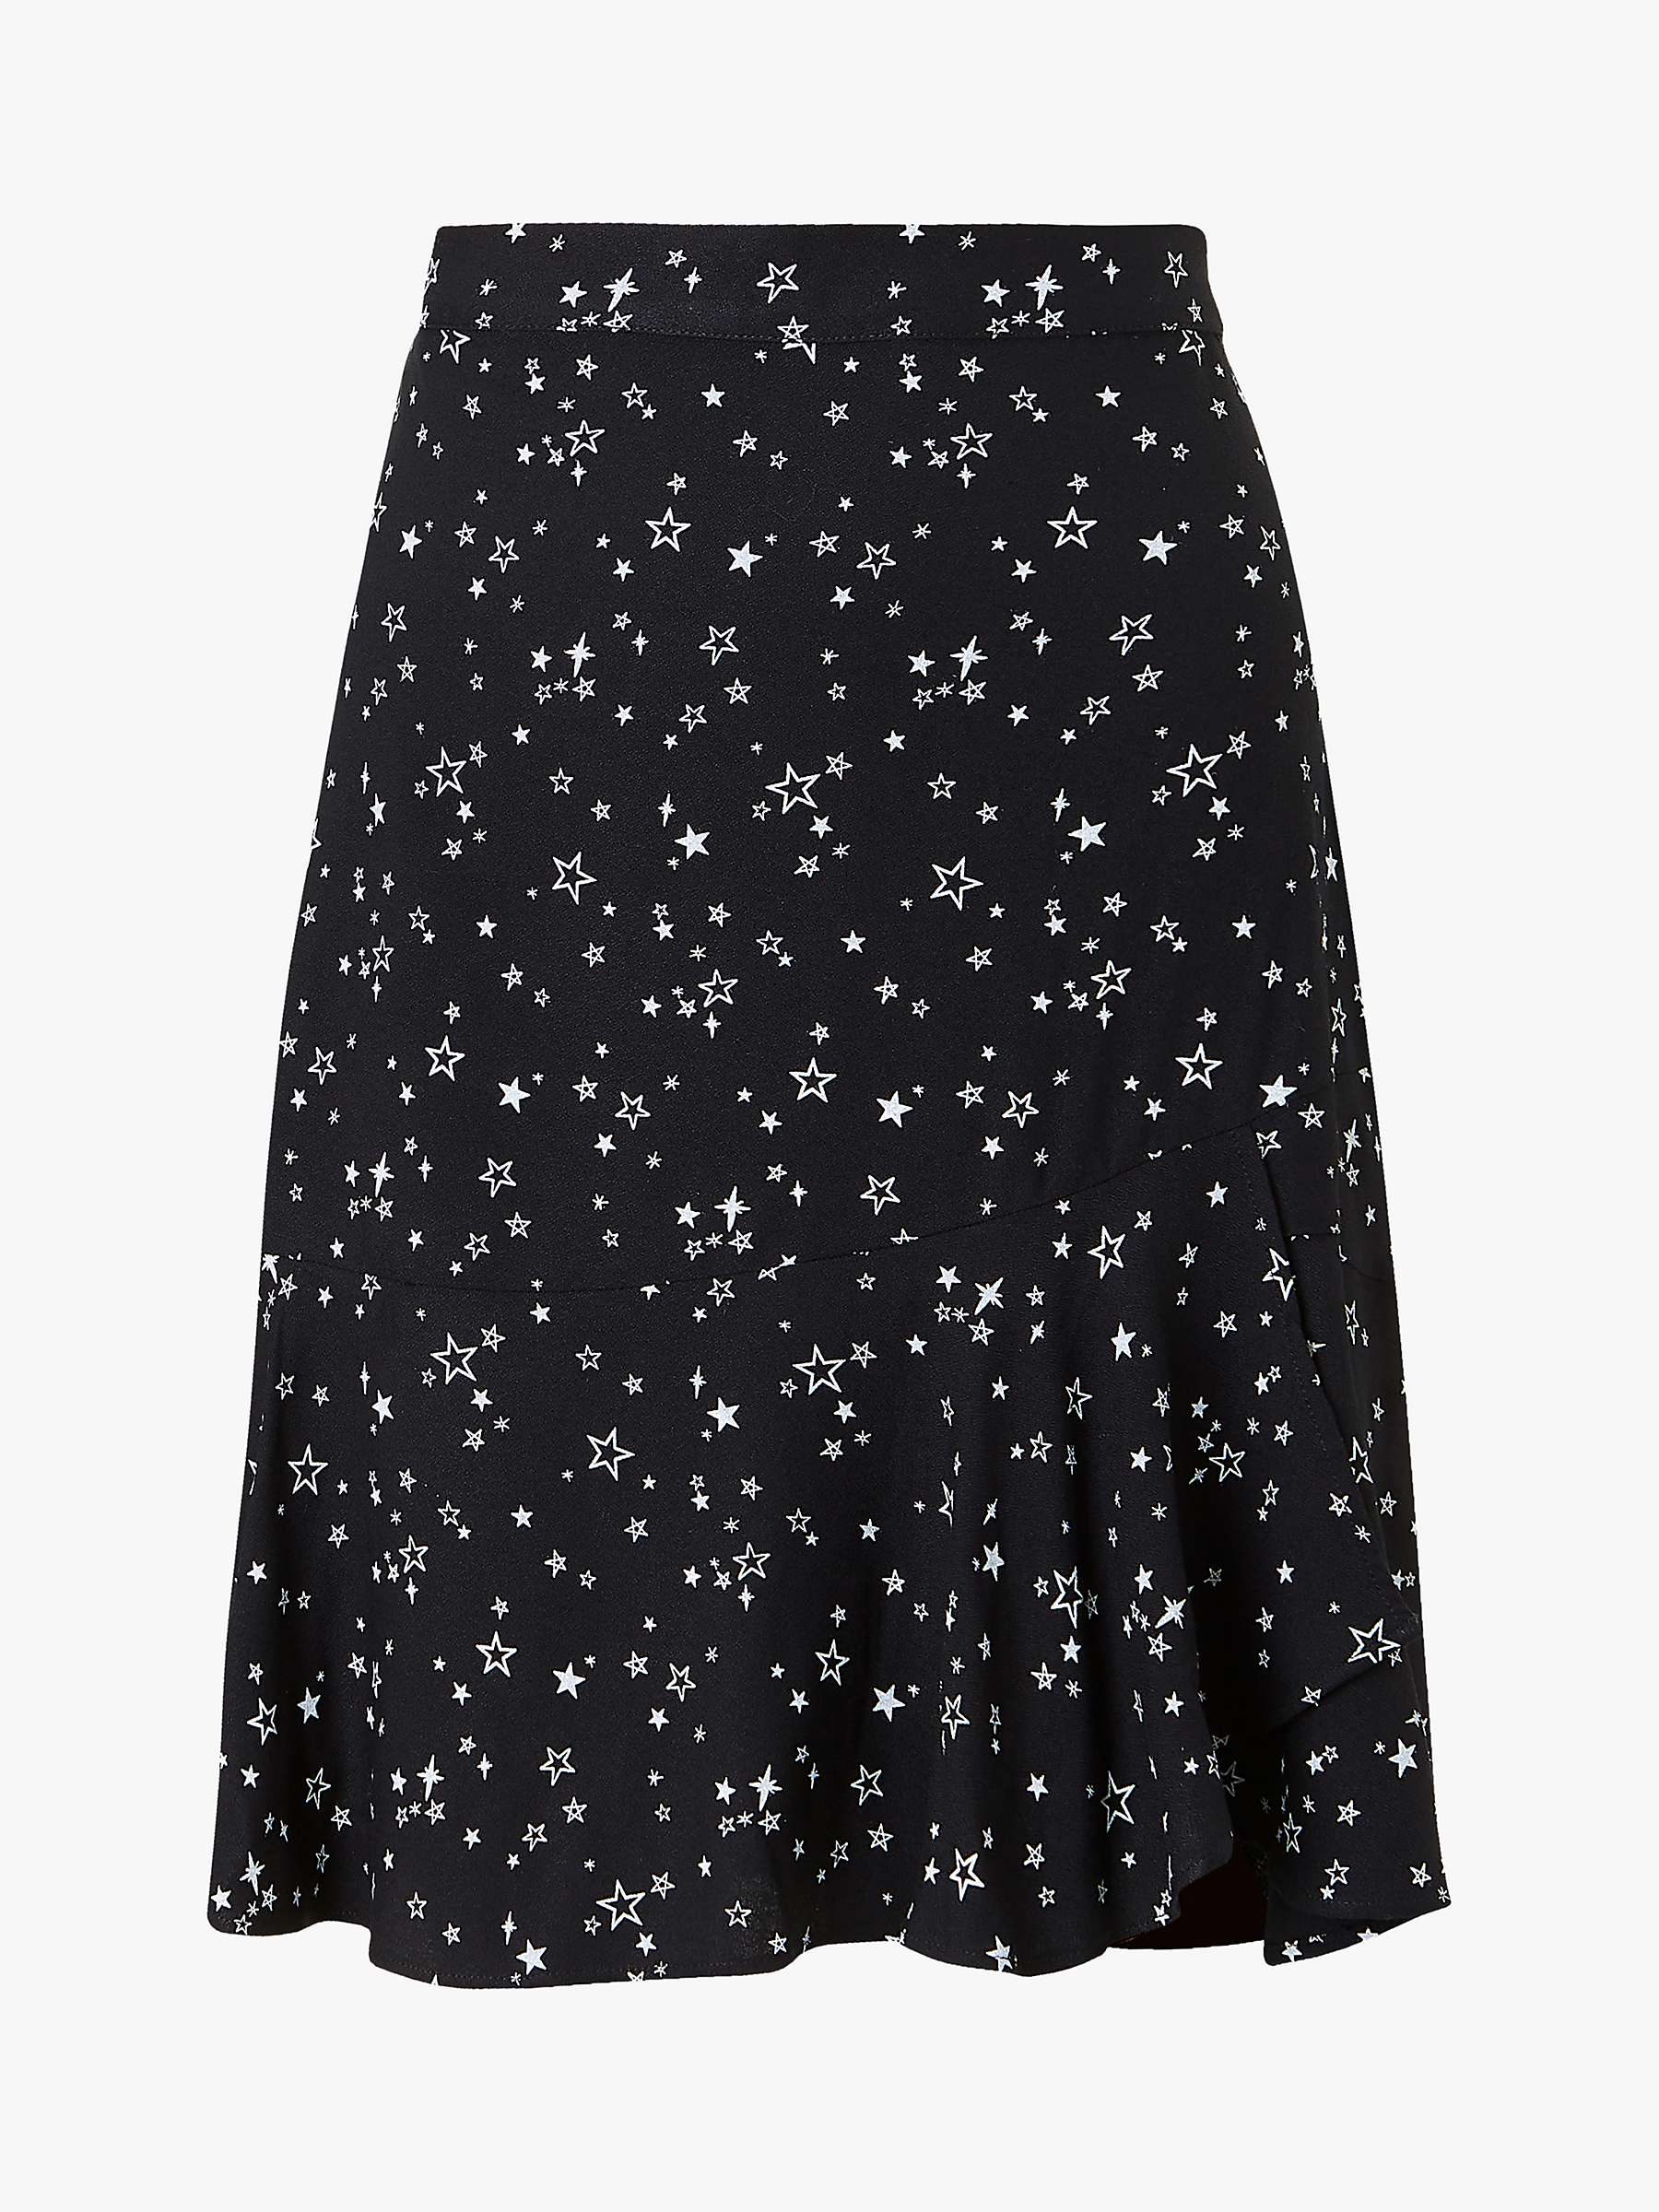 Buy Baukjen Isabella Star Print Skirt, Black Online at johnlewis.com